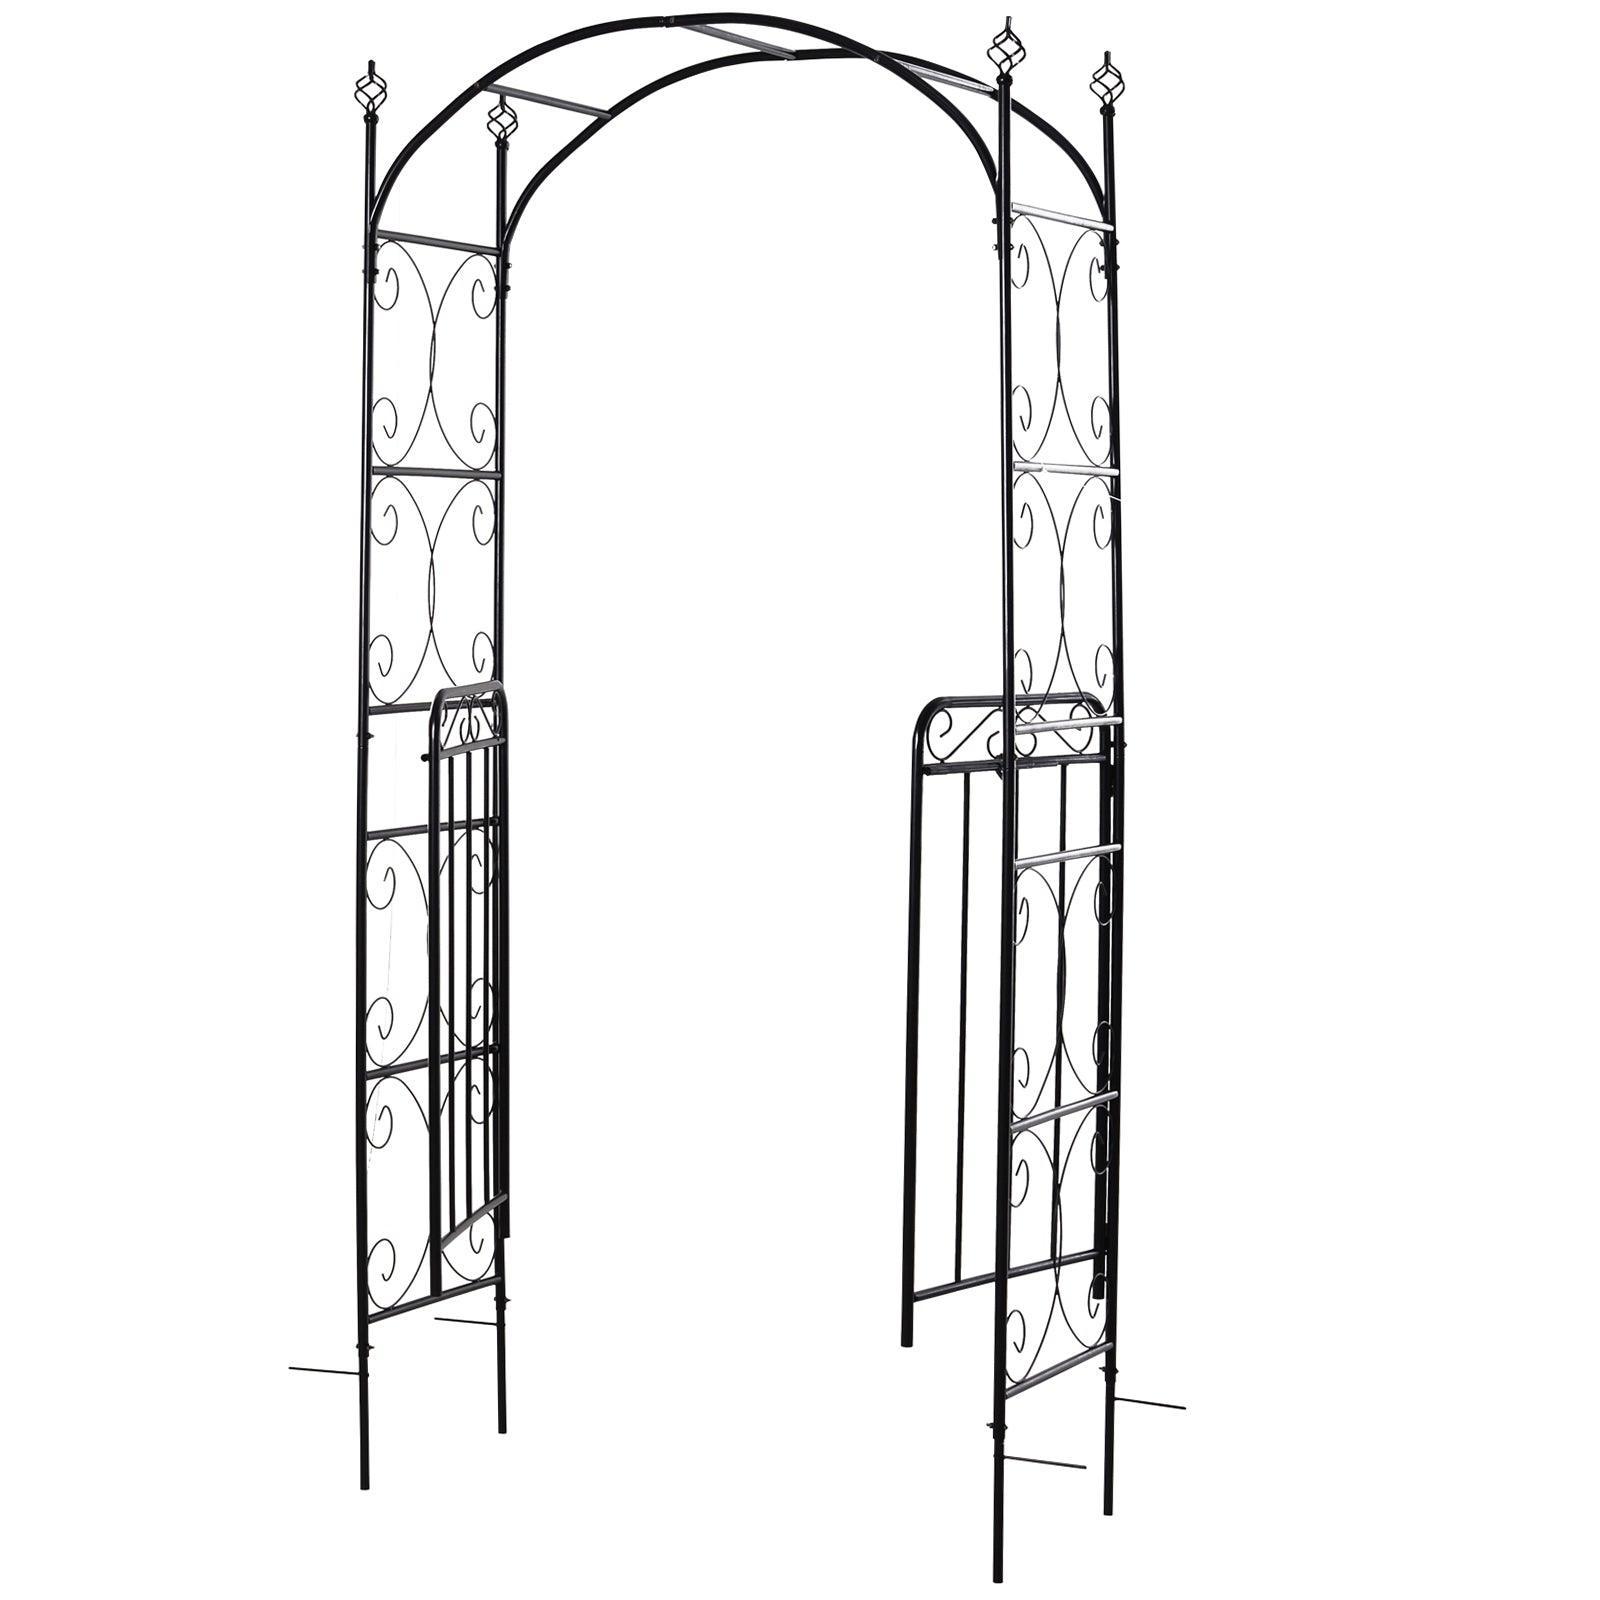 Outsunny Outdoor Metal Garden Archway - ALL4U RETAILER LTD